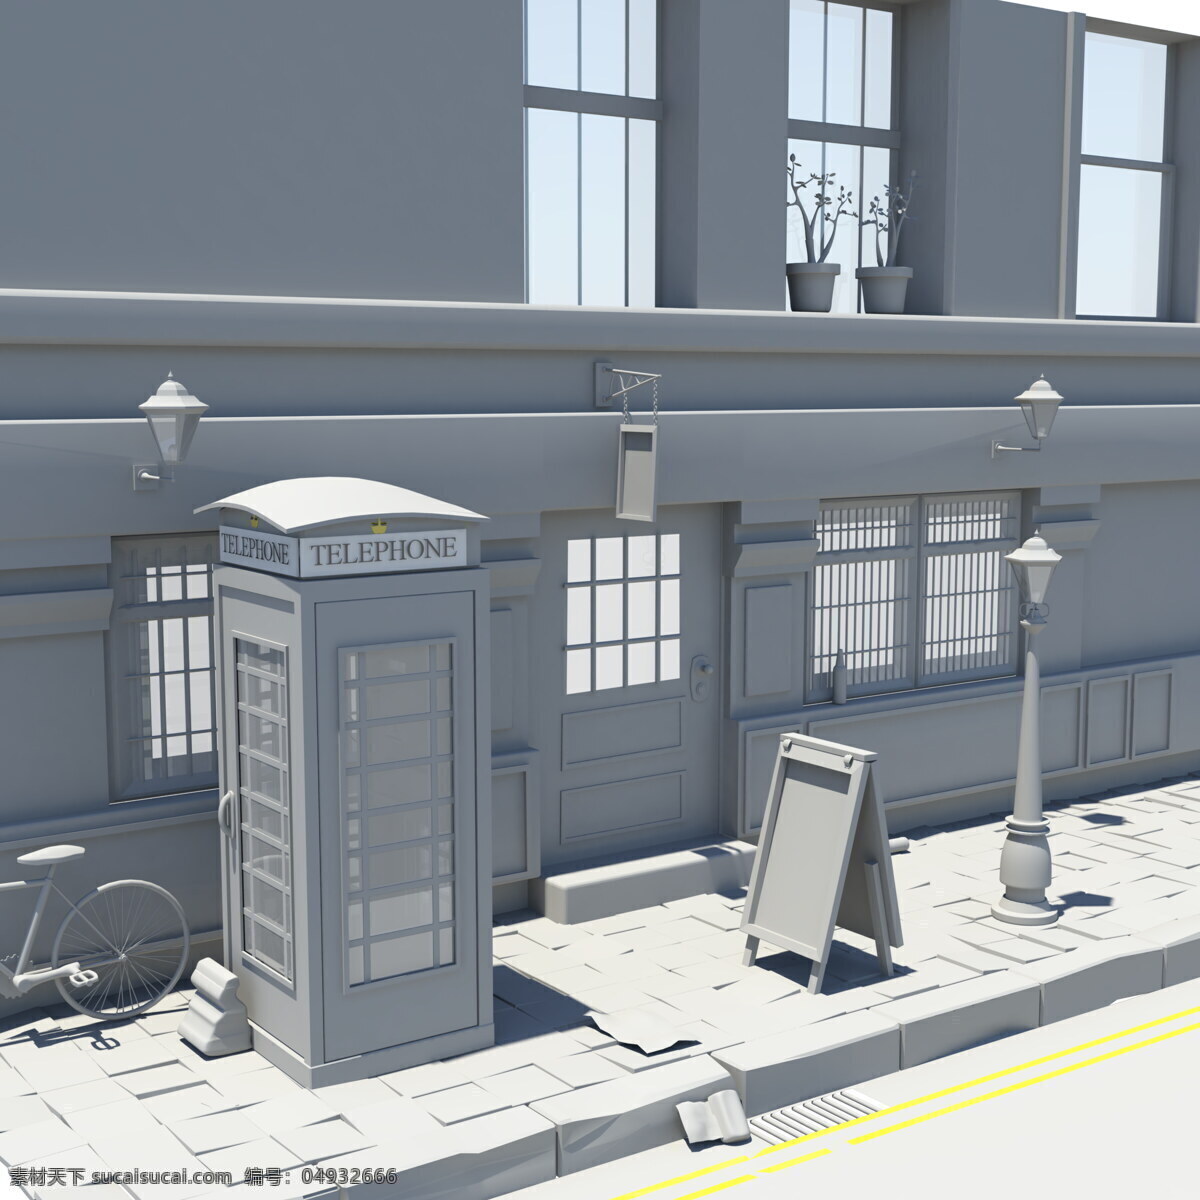 街道模型 3d maya 模型 建模 渲染 3d设计 3d作品